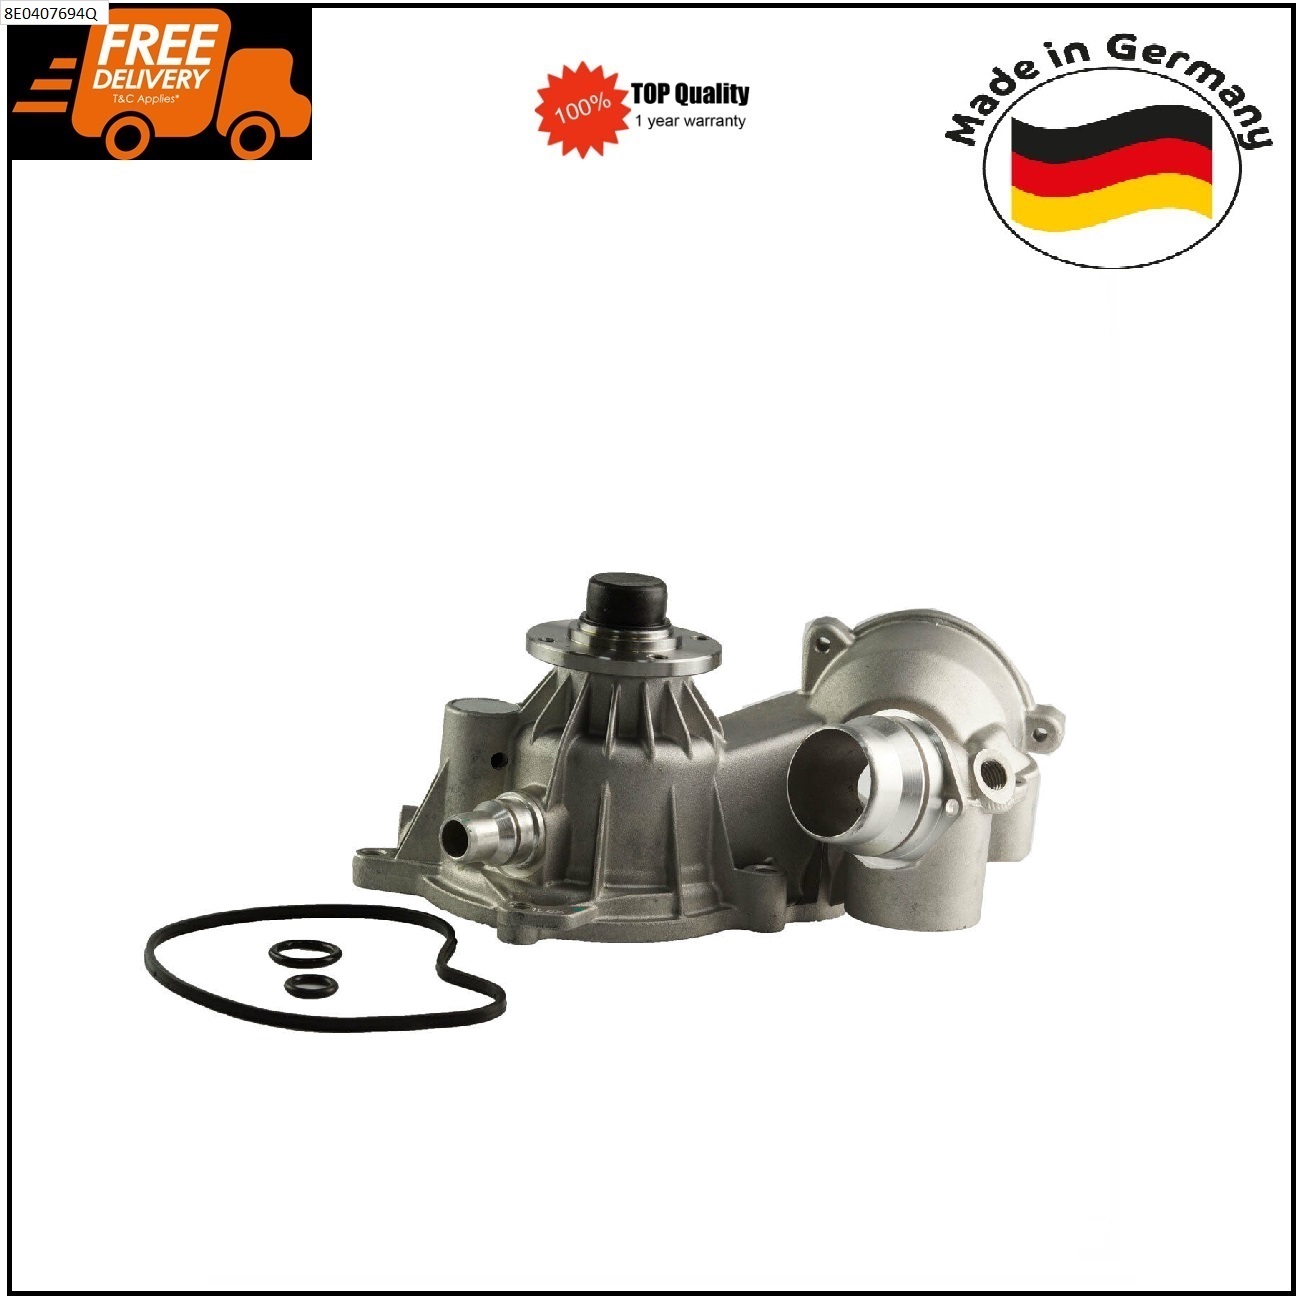 Water Pump for BMW E53 E60 E63 E64 E65 E66 E67 545i 735i 745i 11517586780 German Made